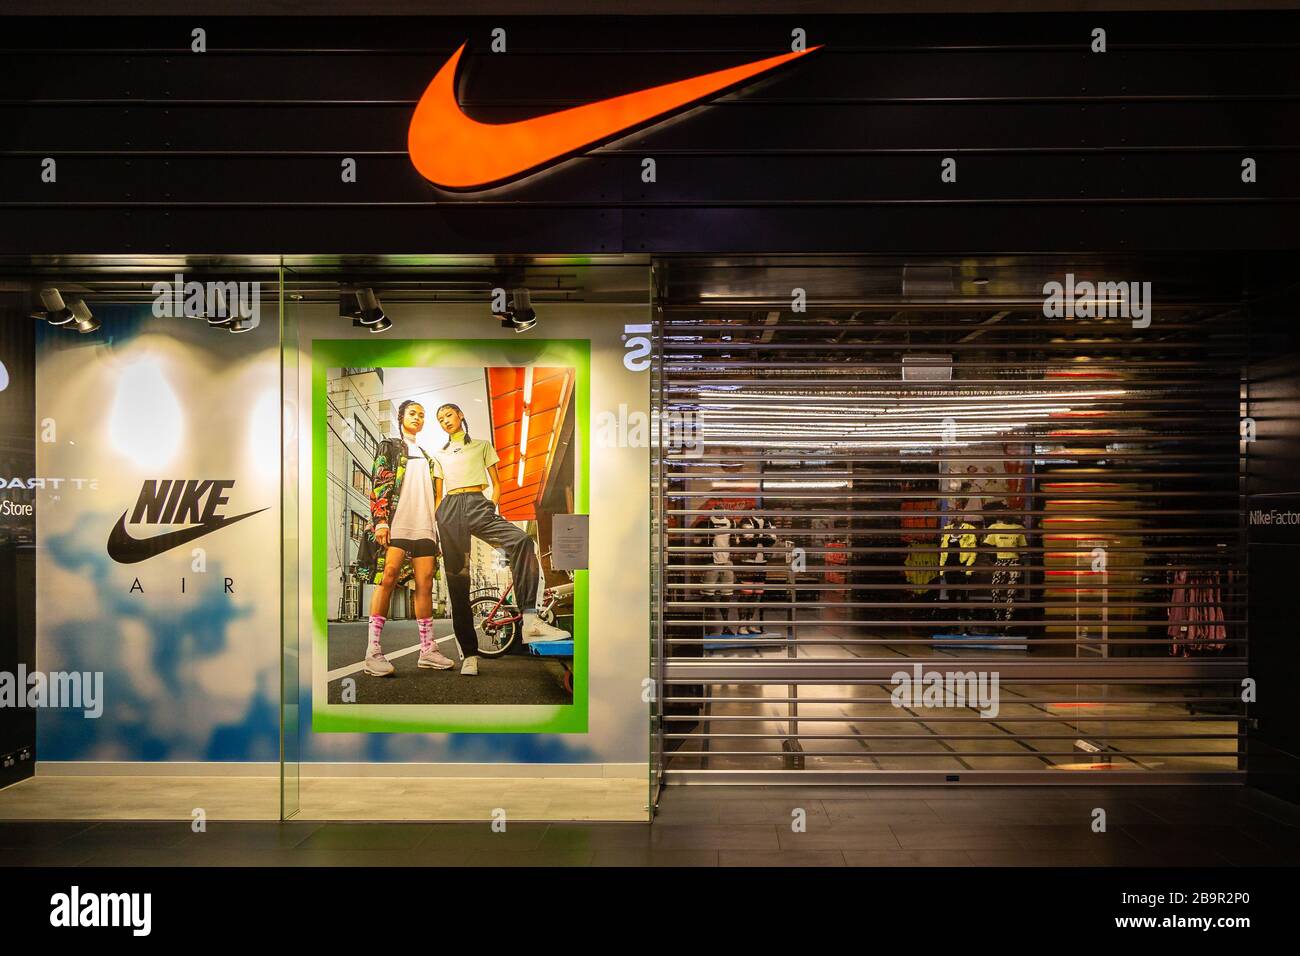 Colonial cebolla Escoba Melbourne, Australia, 25 de marzo de 2020. Las tiendas Nike eligen cerrar  sus puertas cuando COVID-19 Pandemic llega a Melbourne, Australia. Crédito:  Dave Hewison/Alamy Live News Fotografía de stock - Alamy